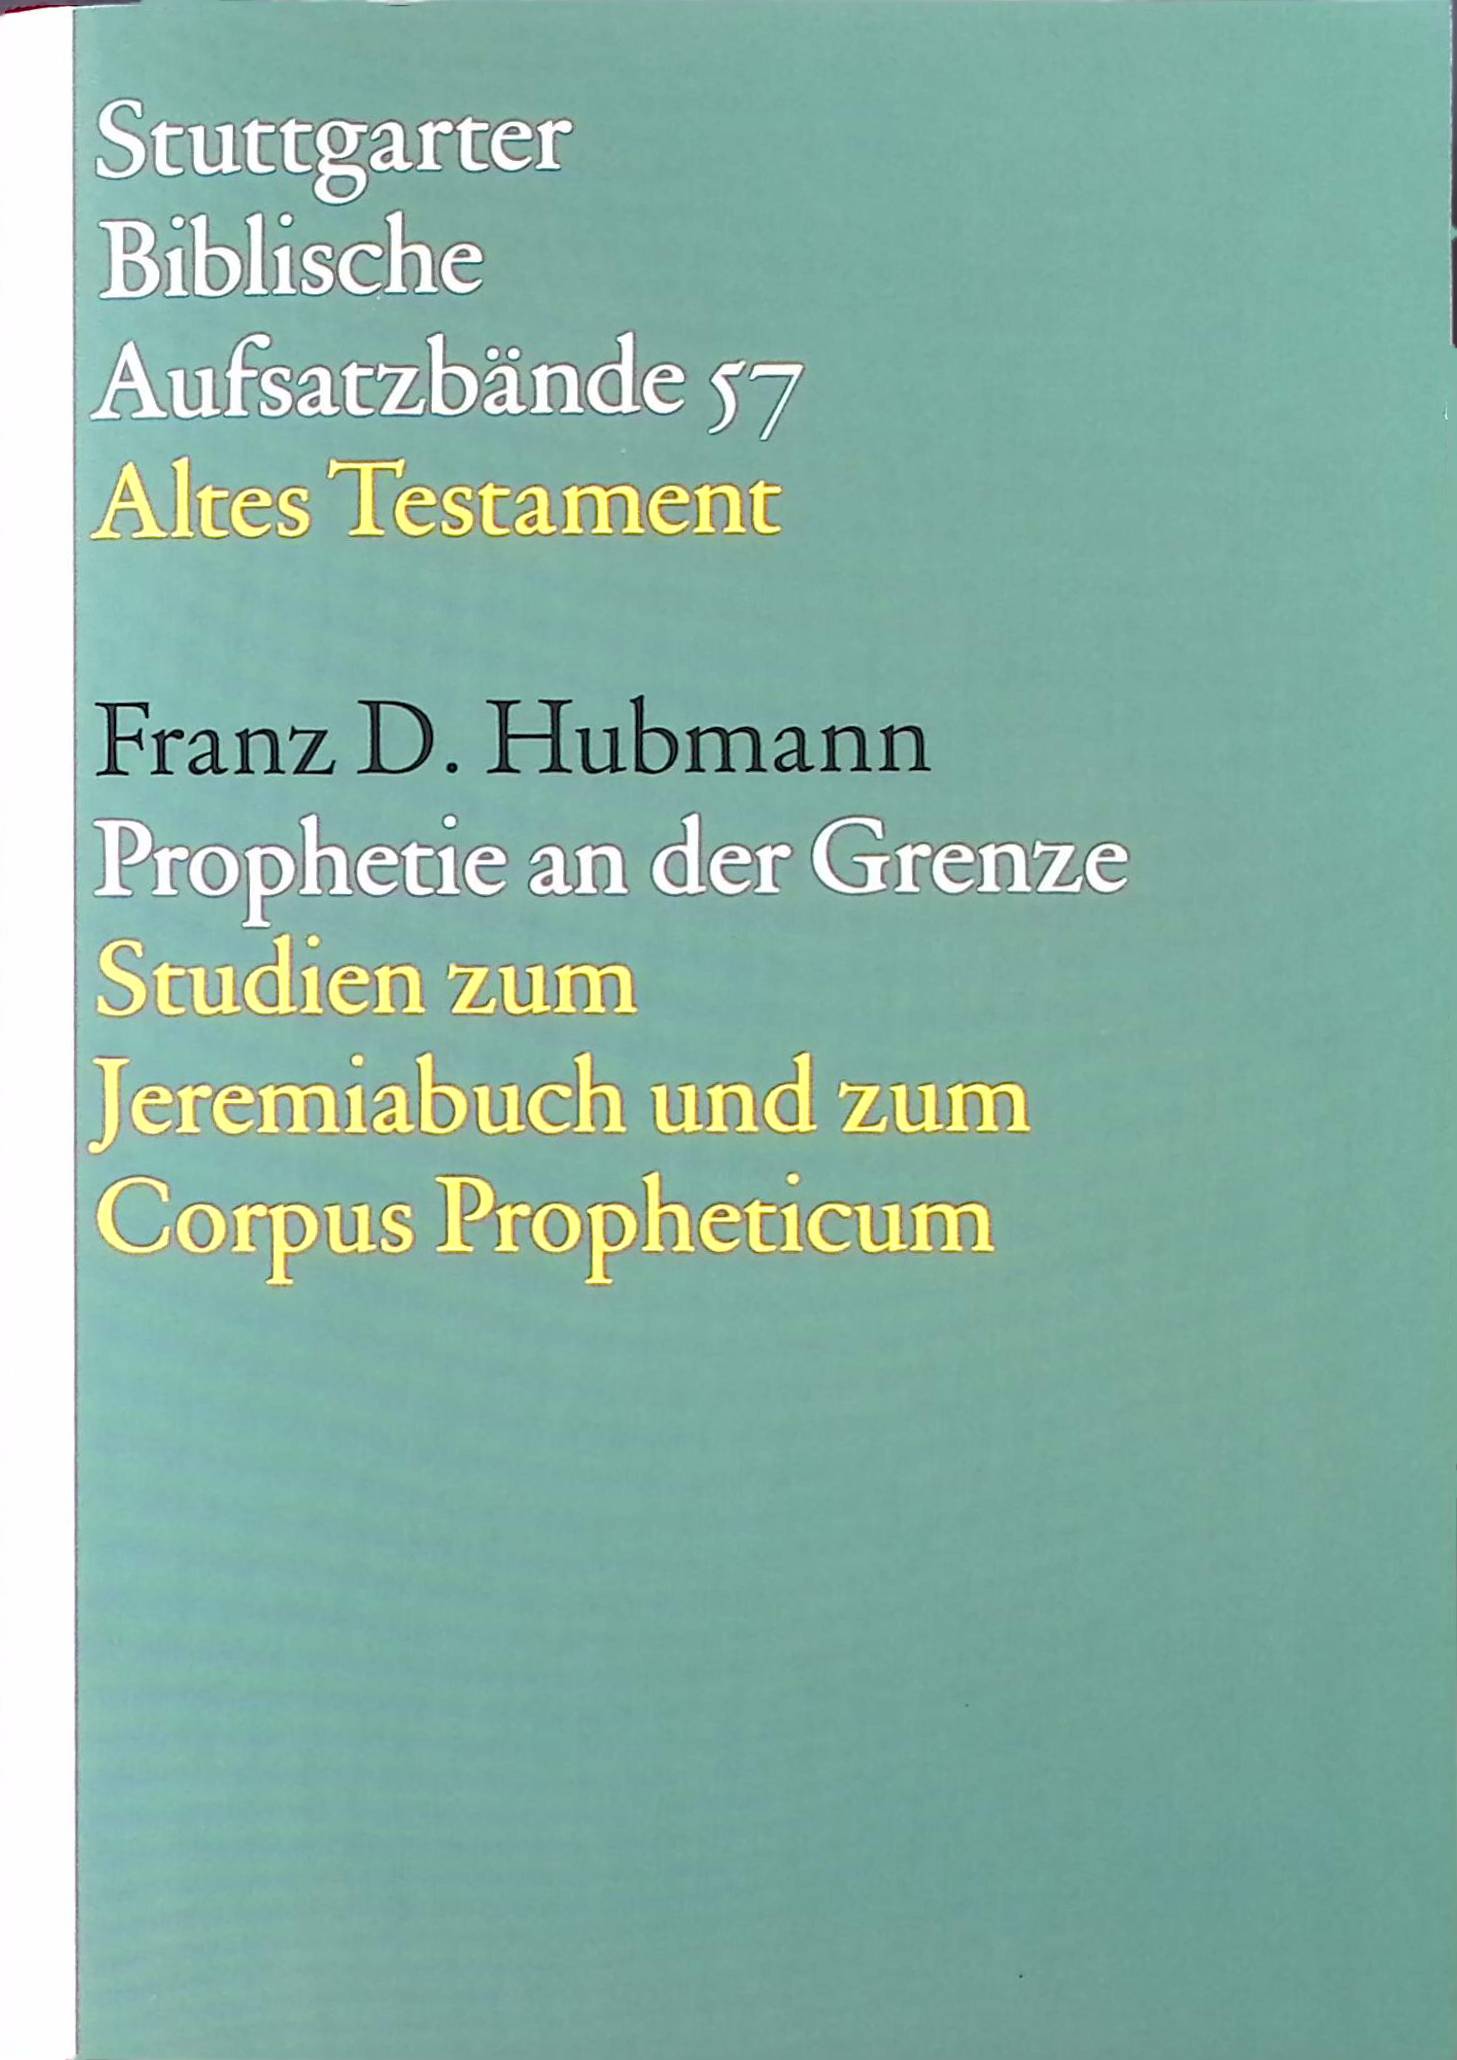 Prophetie an der Grenze : Studien zum Jeremiabuch und zum Corpus Propheticum. Stuttgarter biblische Aufsatzbände ; 57 : Altes Testament - Hubmann, Franz D.